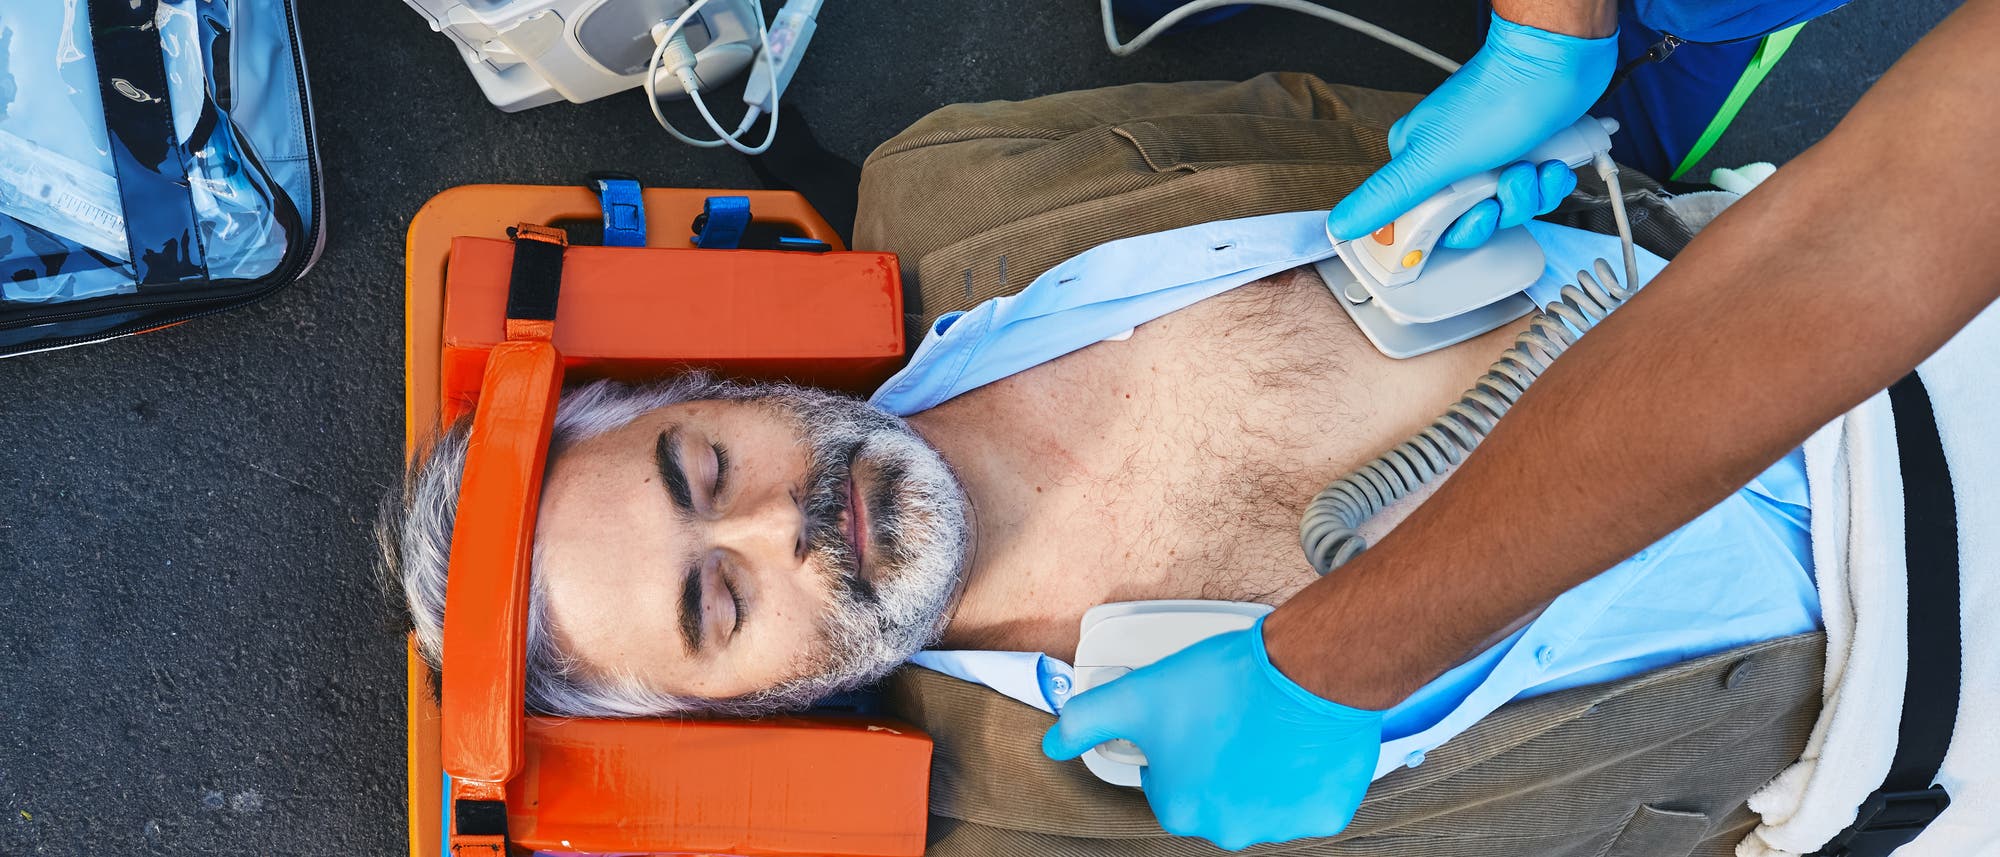 Grauhaariger Mann liegt auf dem Boden und wird mit einem Defibrillator behandelt